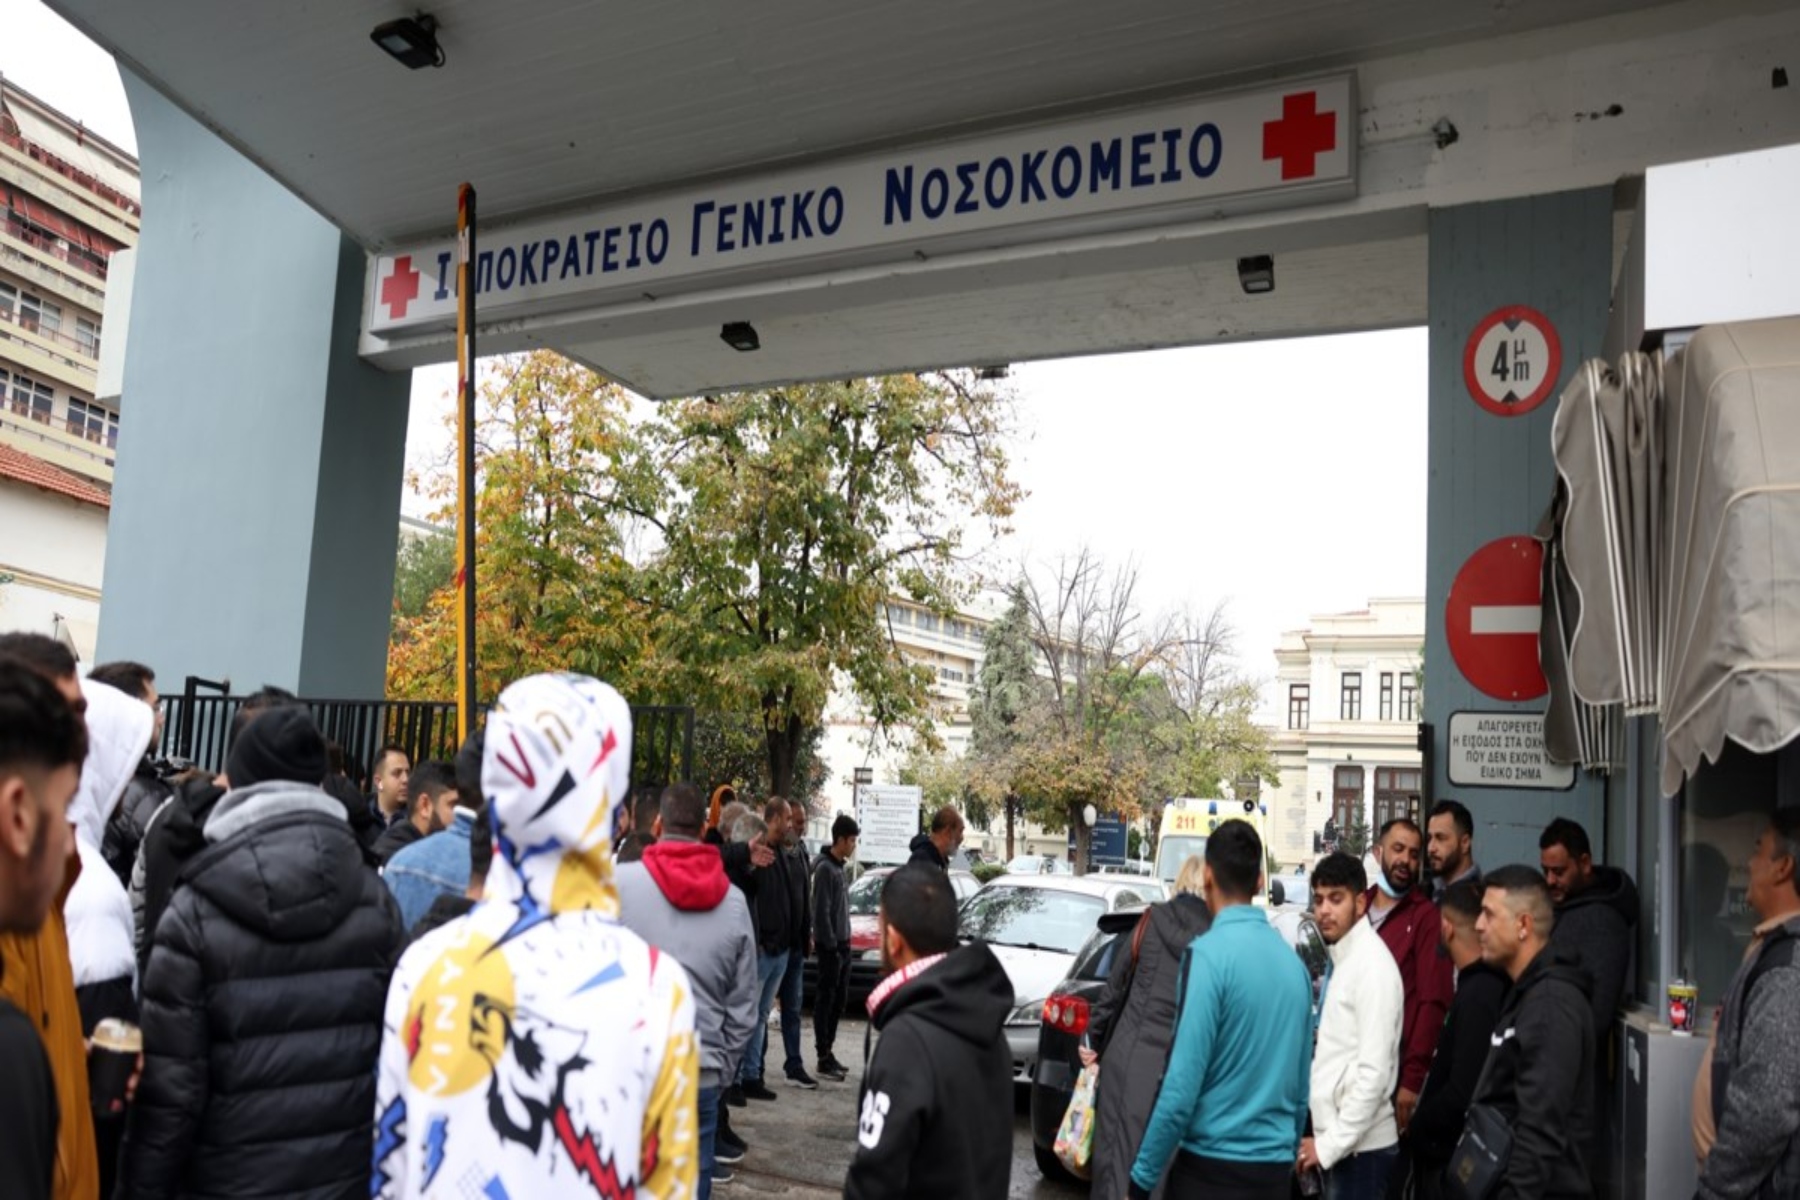 Ιπποκράτειο Νοσοκομείο: Η ανακοίνωση του Θάνου Πλεύρη για τις απειλές που δέχεται το ιατρικό προσωπικό στη Θεσσαλονίκη